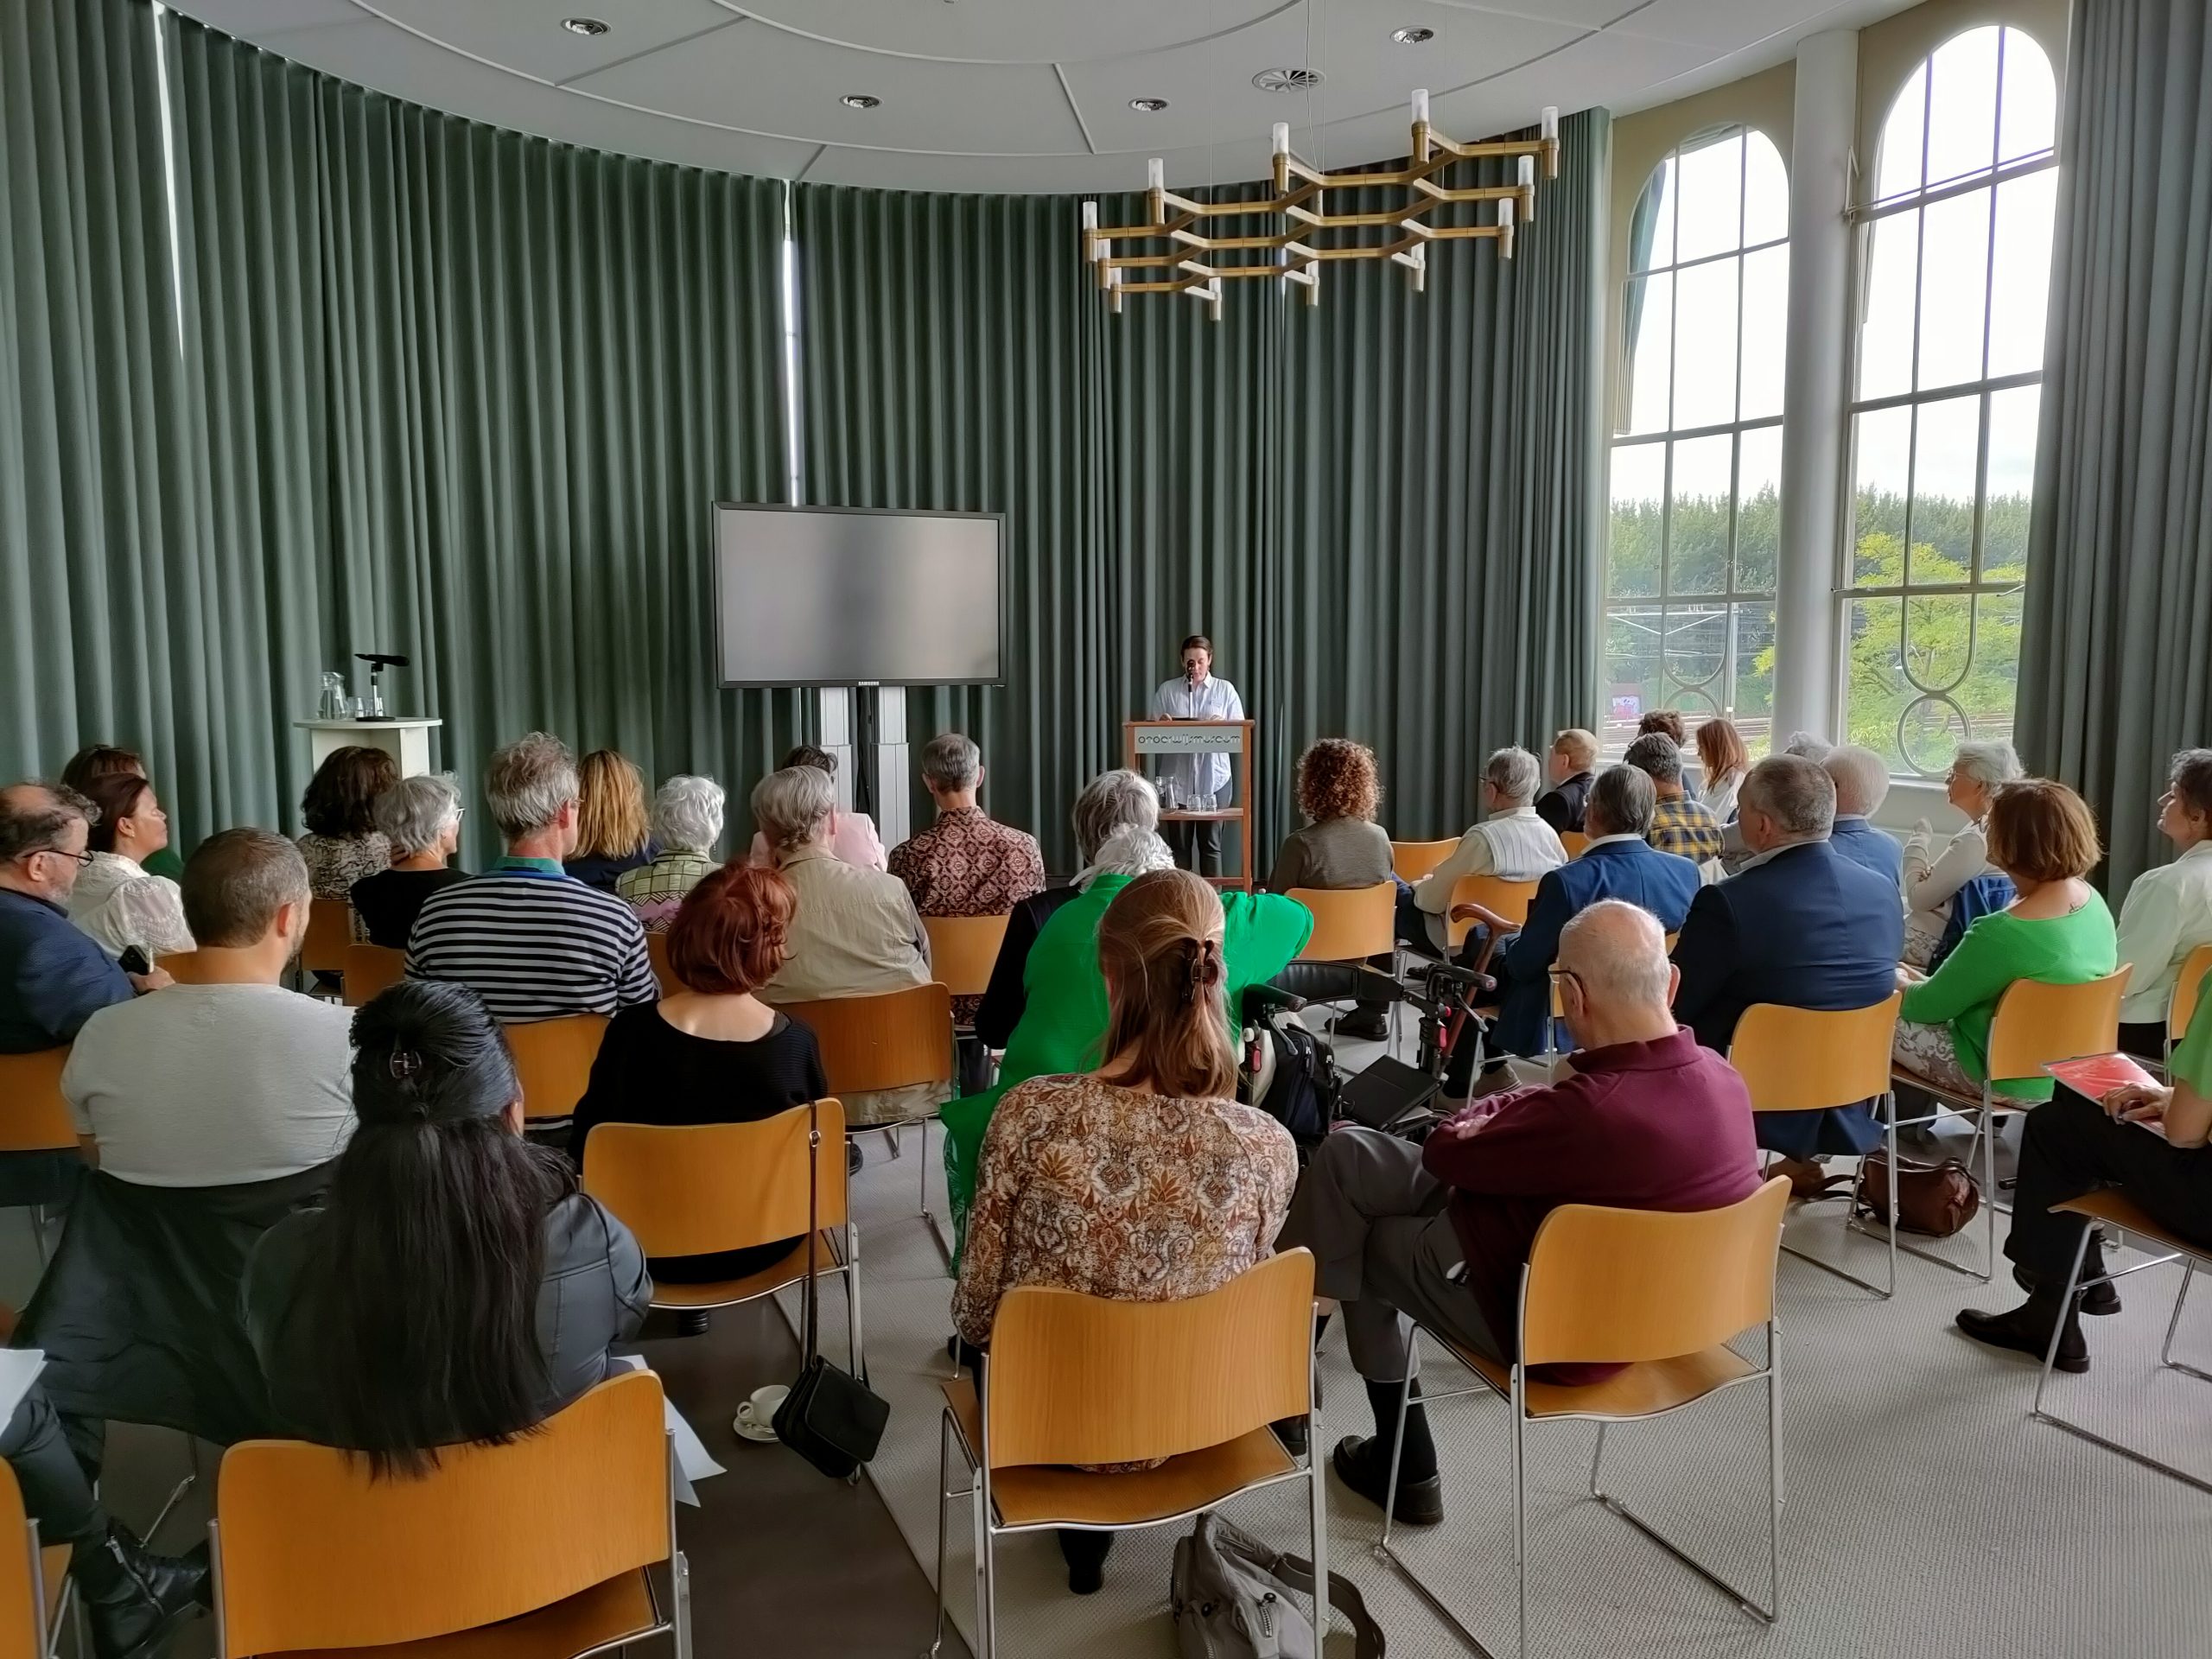 Maaike van der Kloet verozrgde de inleiding tijdens de nabestaandendag op 17 september in het Nationaal Onderwijsmuseum in Dordrecht.